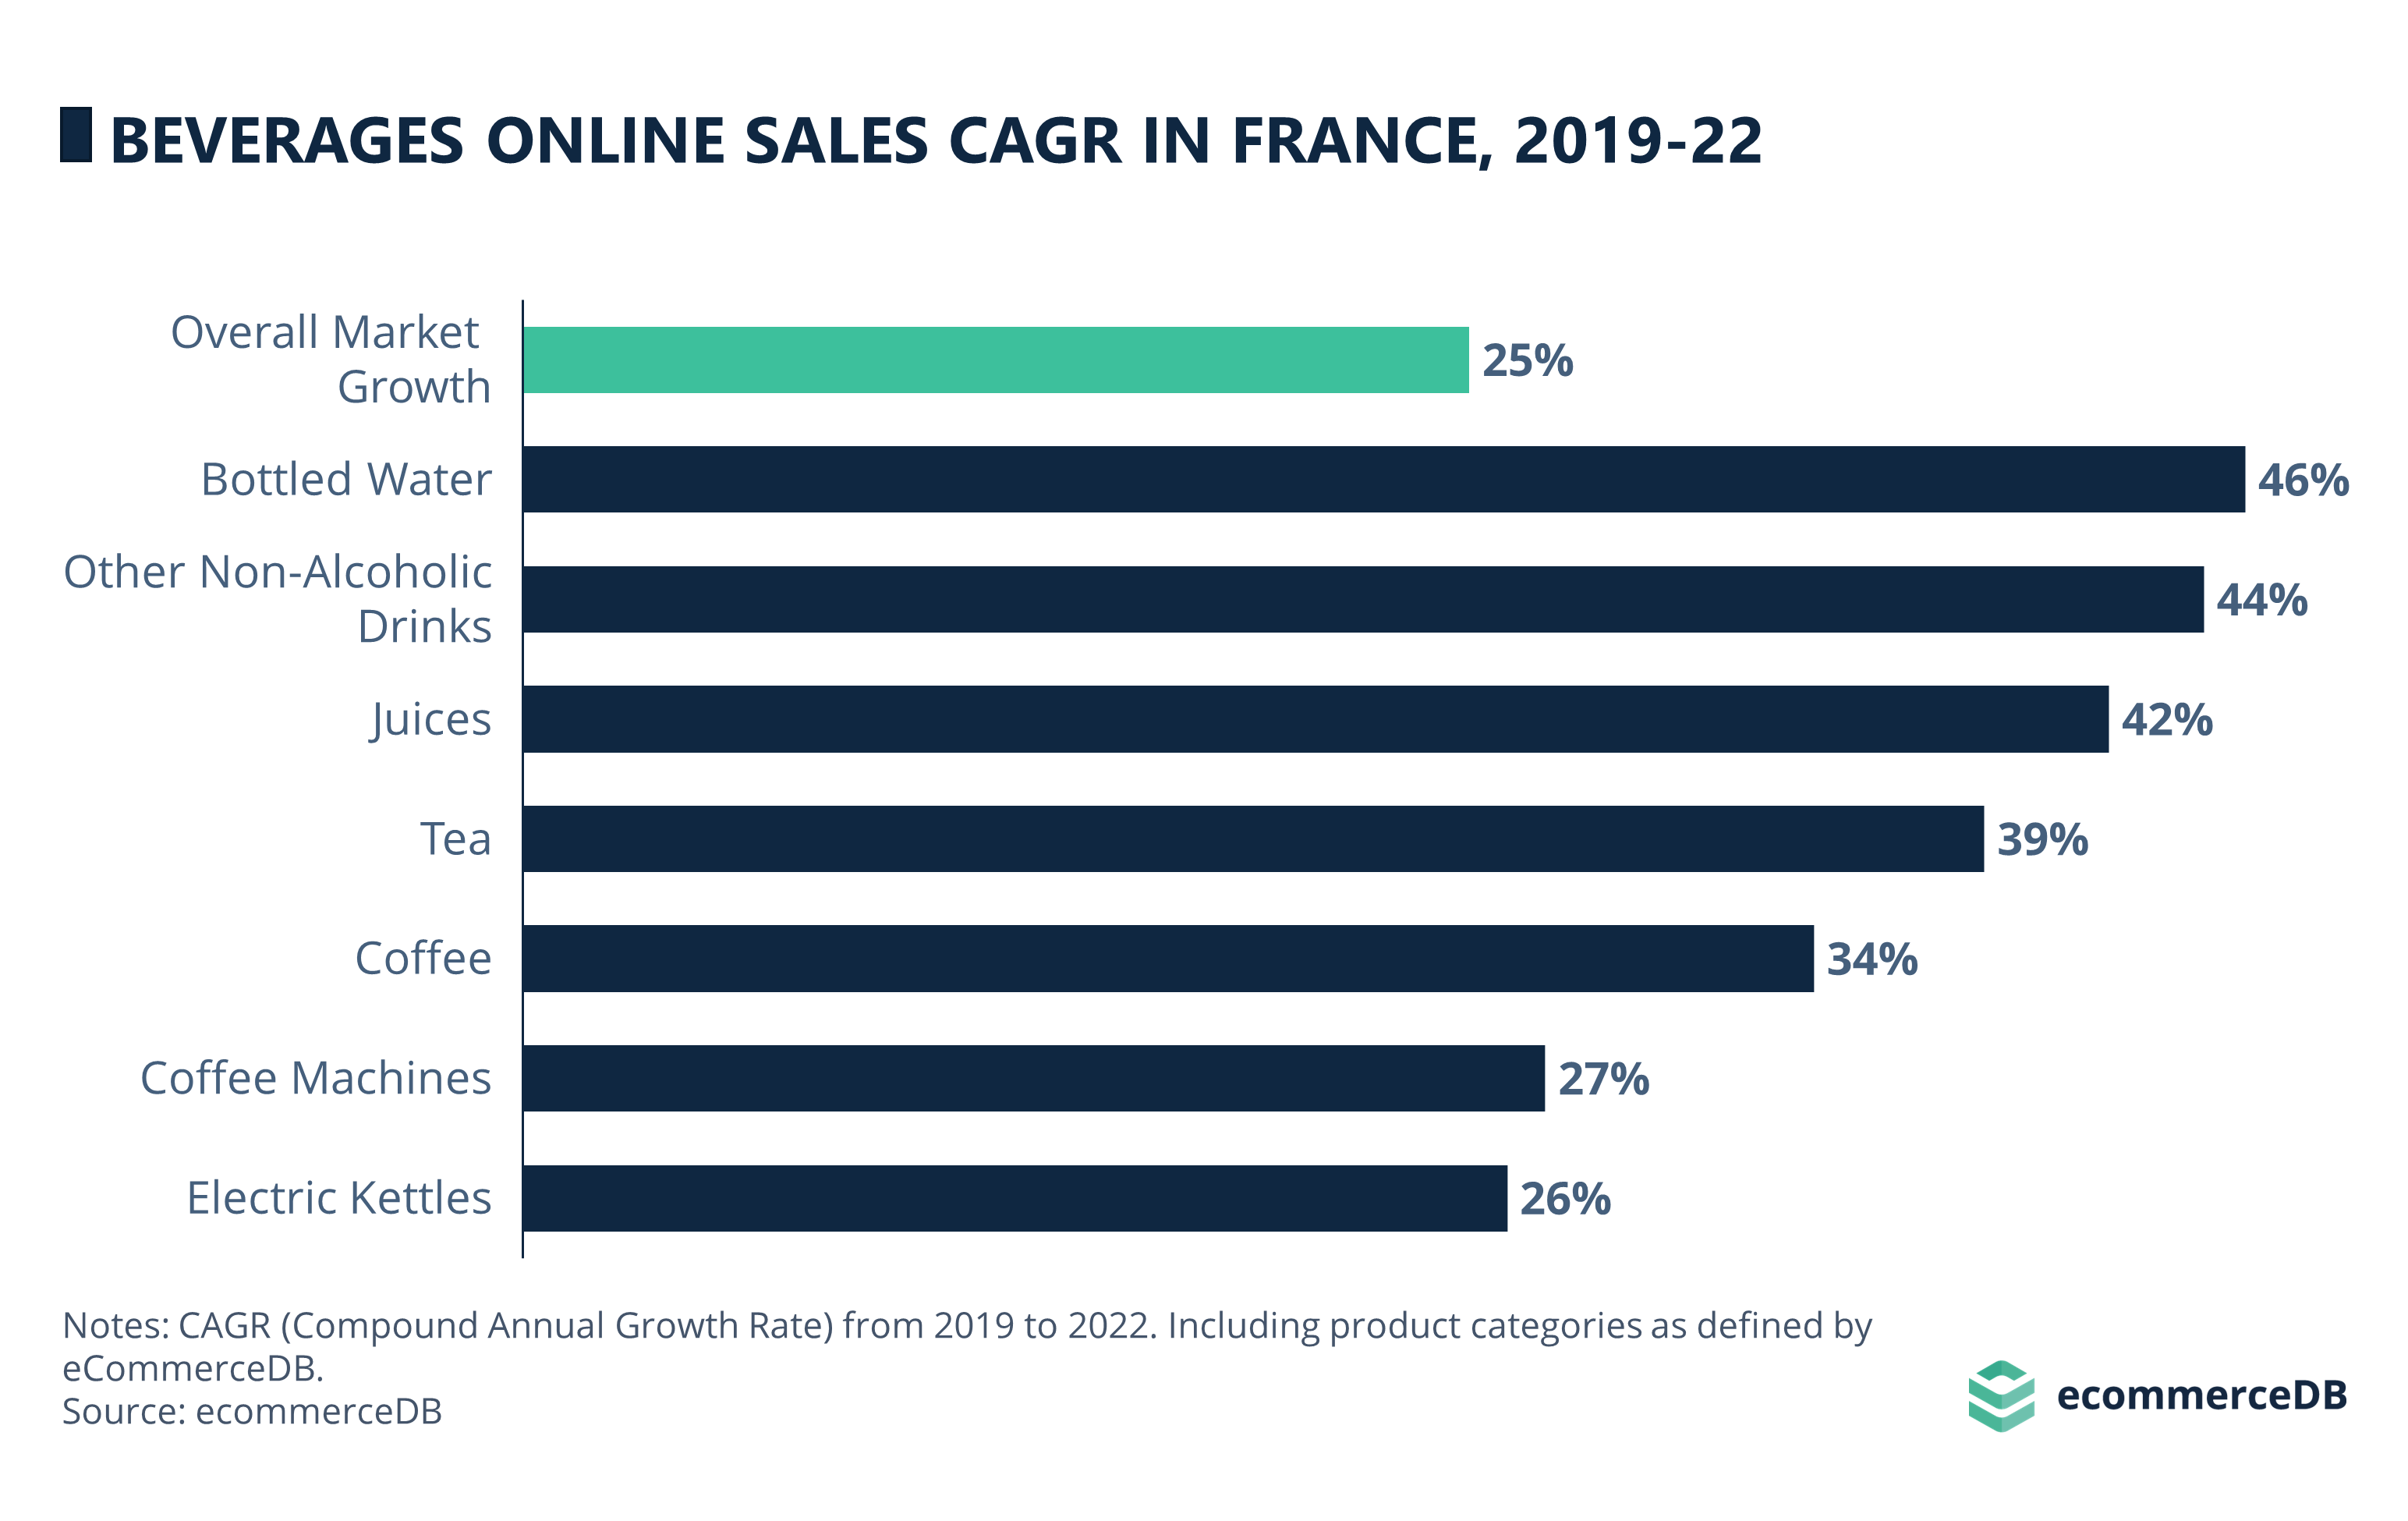 Beverages Online Sales CAGR (19-22) in France